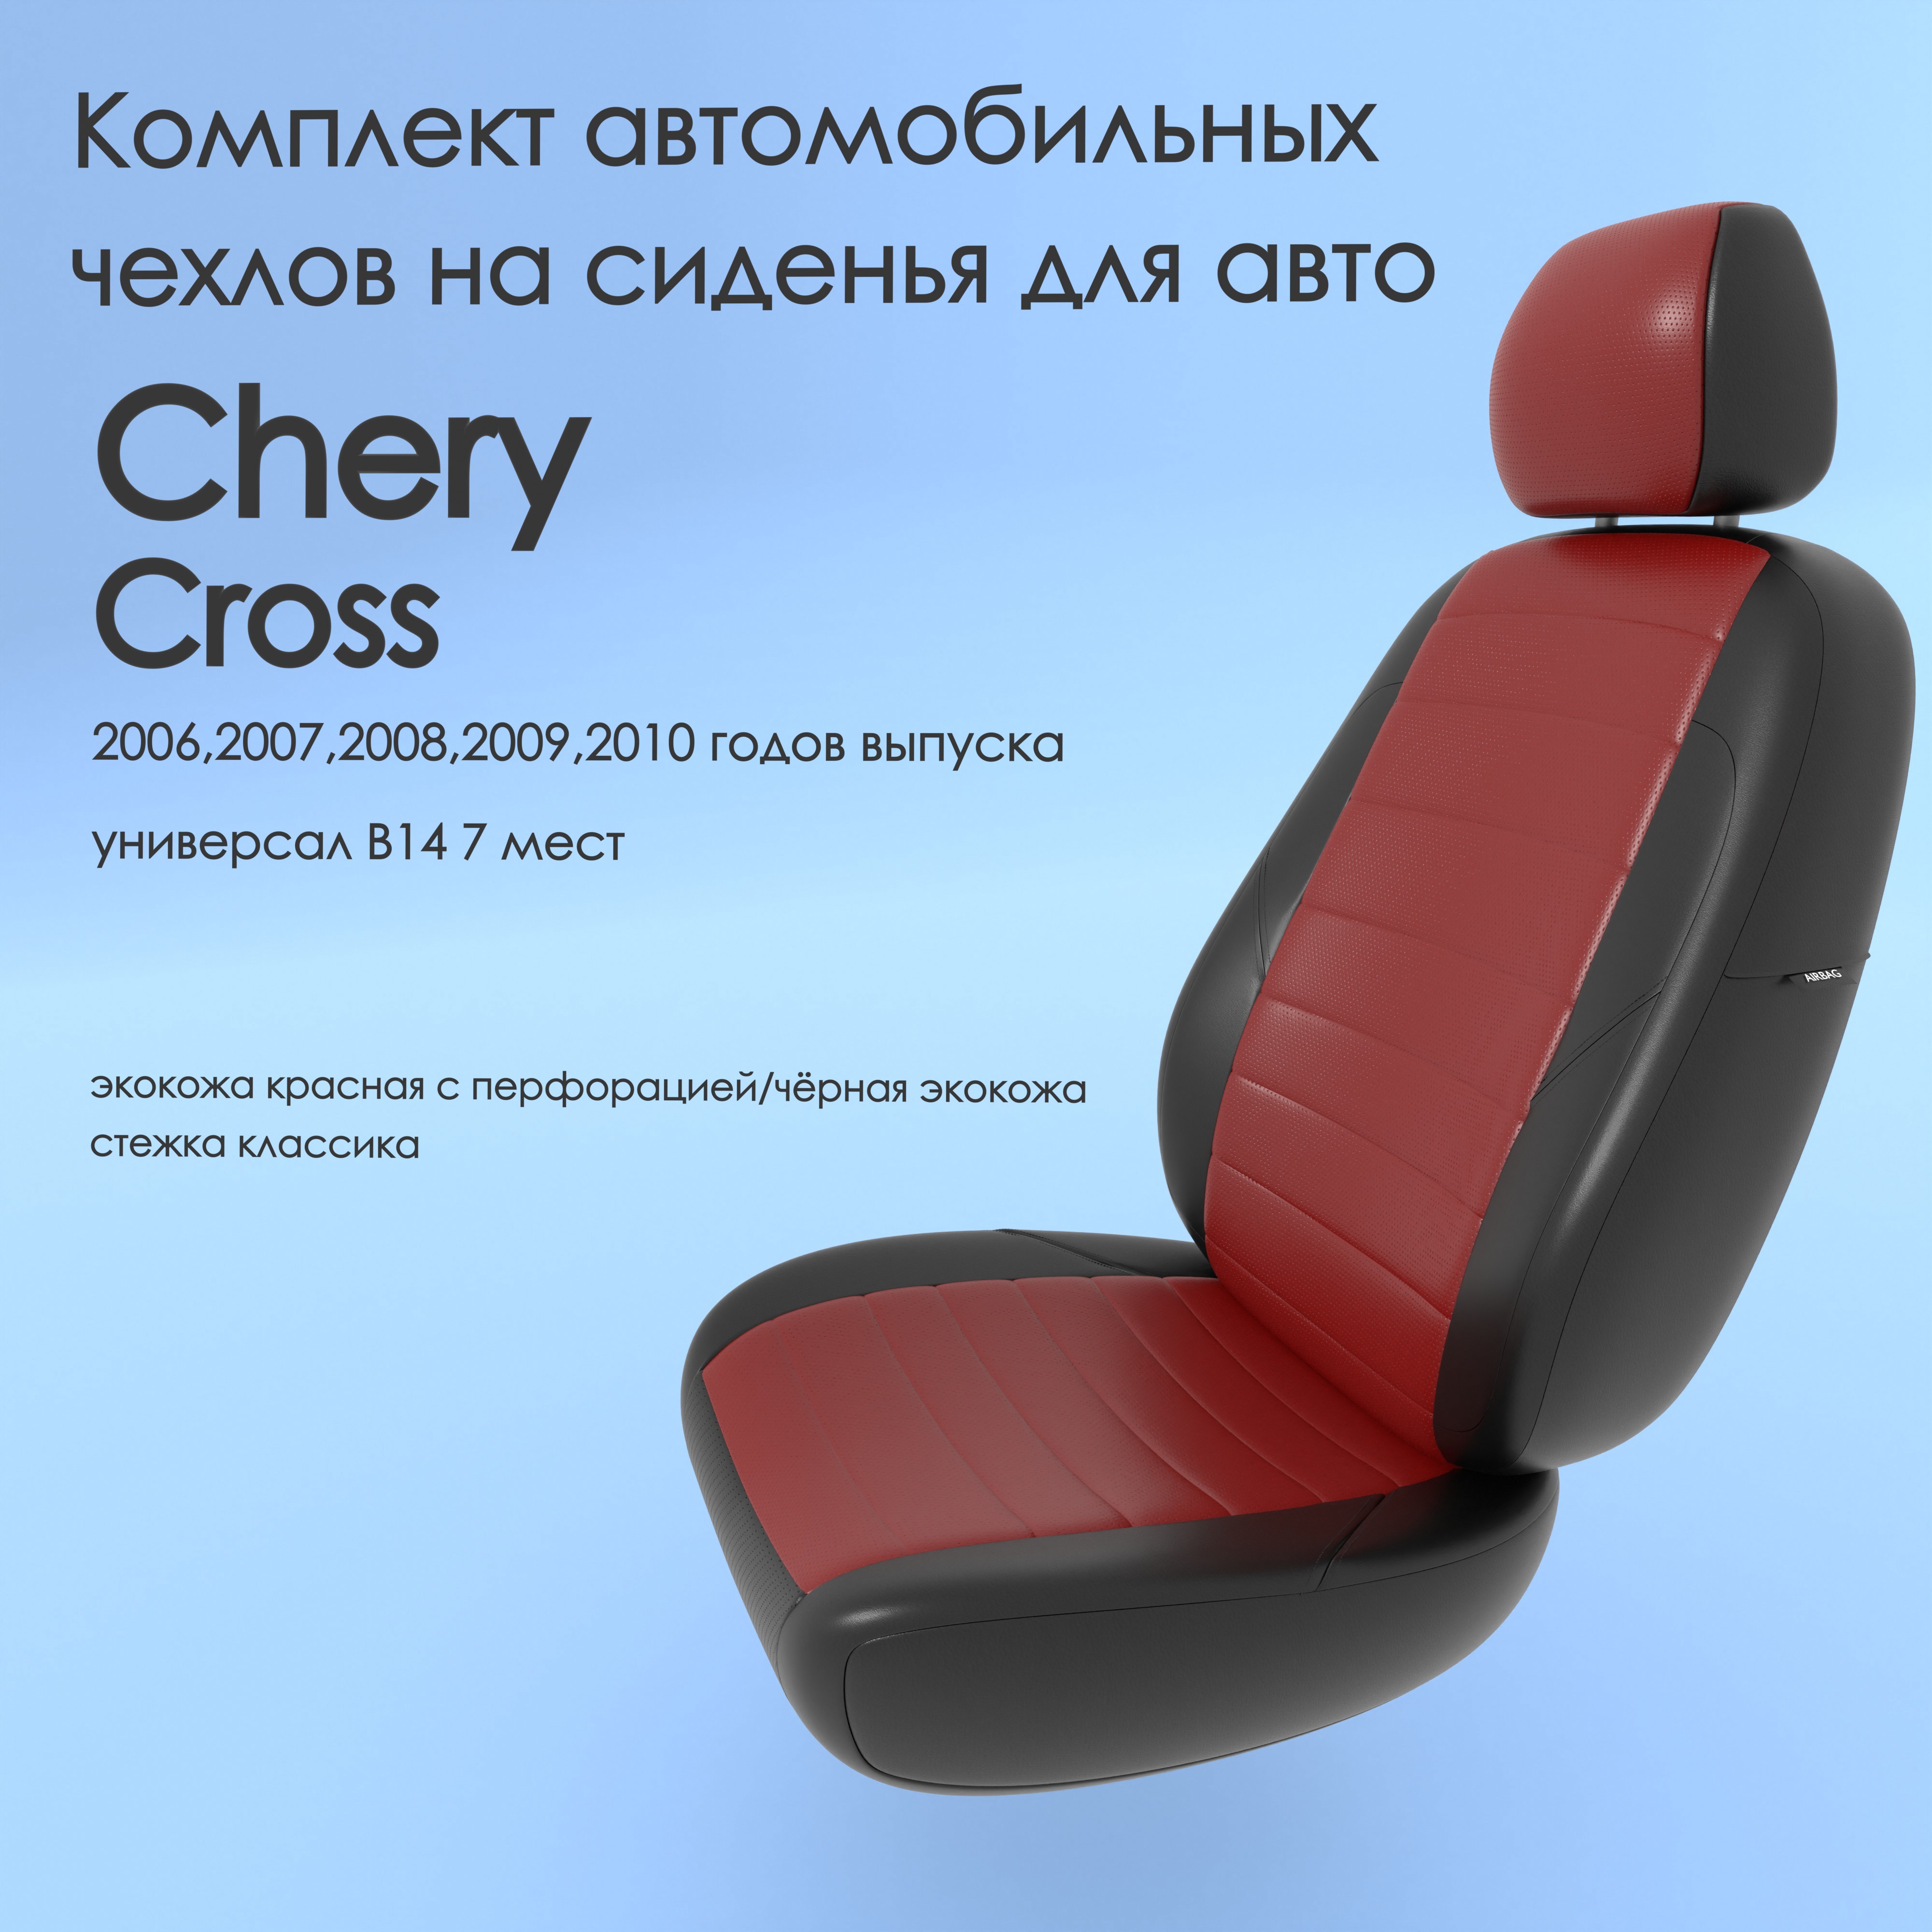 фото Чехлы чехломания chery cross 2006-2010 универсал в14 7 м 40/60 кр/чер-эк/k1